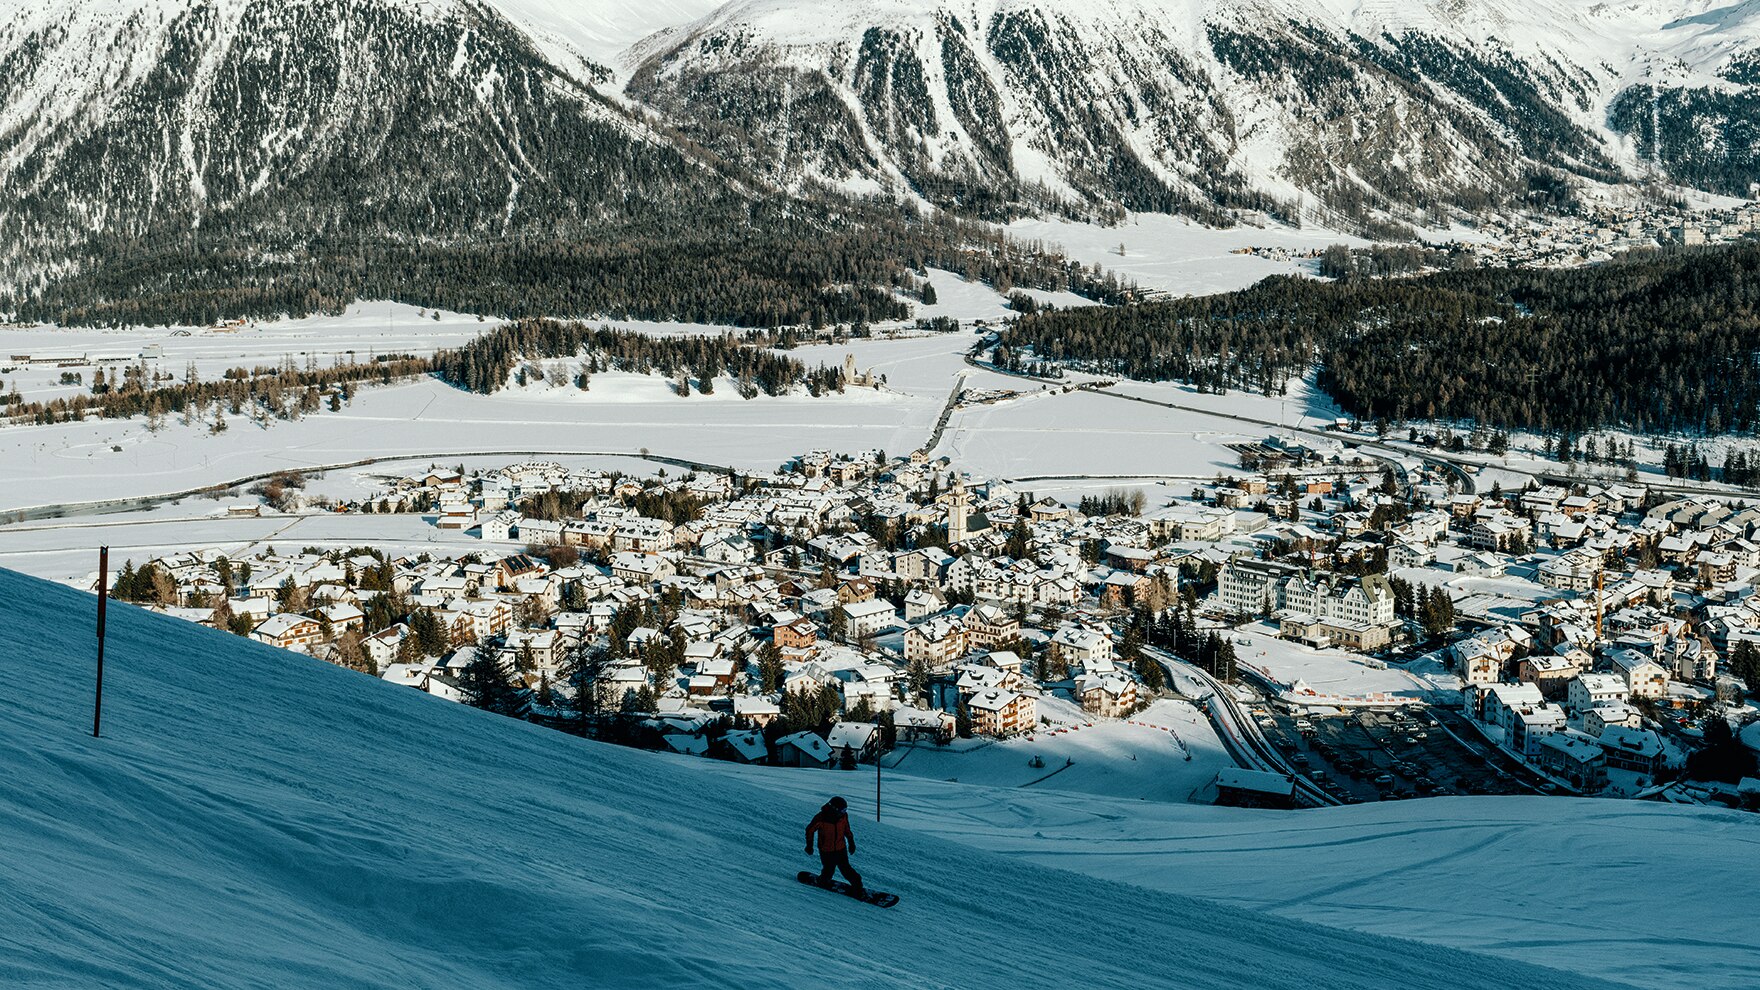 Der Blick auf den Piz Bernina und runter ins Tal – das begeistert selbst Einheimische stets aufs Neue. – Ueli Lamm